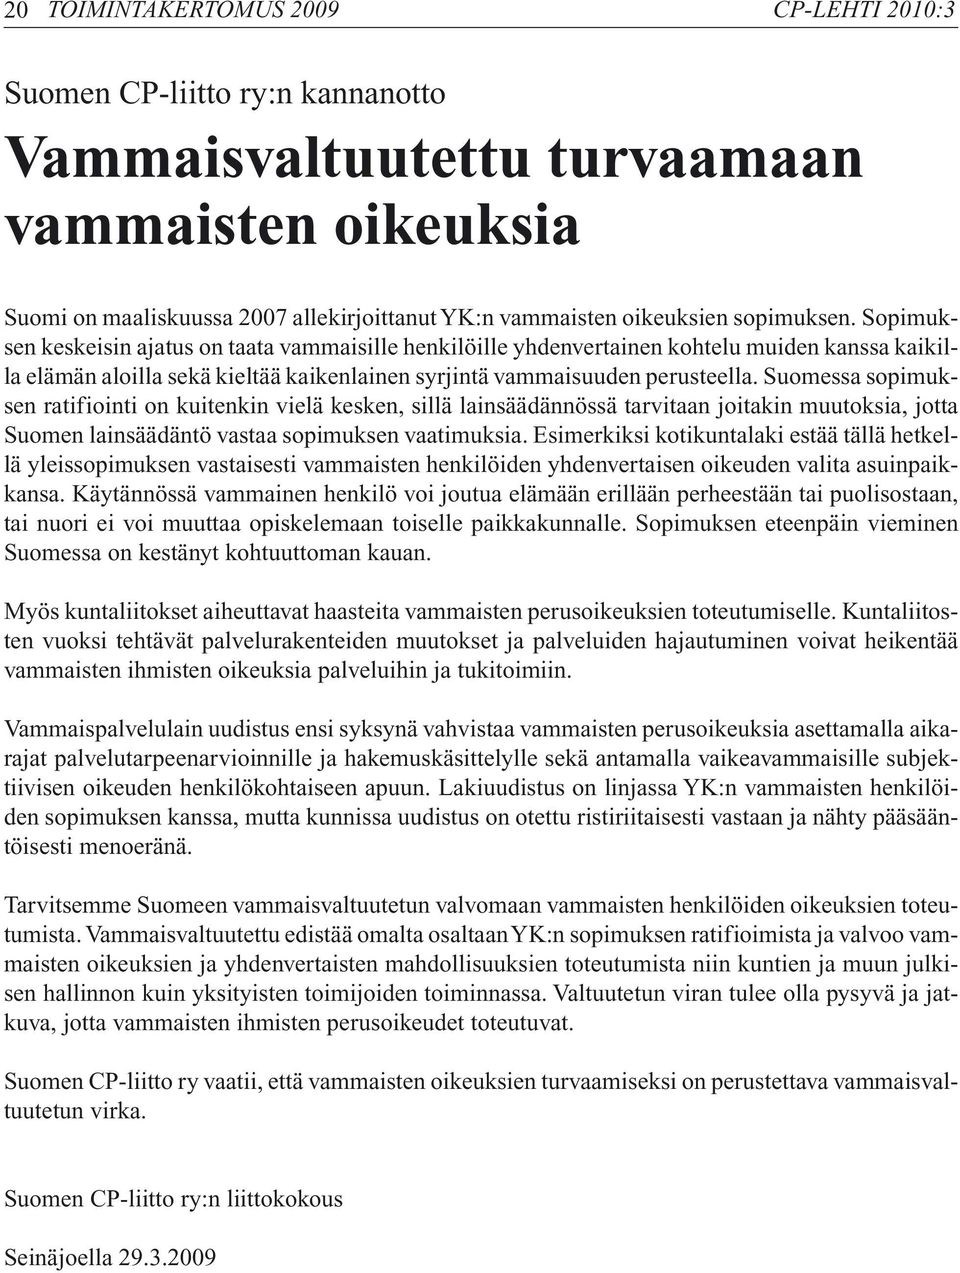 Suomessa sopimuksen ratifiointi on kuitenkin vielä kesken, sillä lainsäädännössä tarvitaan joitakin muutoksia, jotta Suomen lainsäädäntö vastaa sopimuksen vaatimuksia.